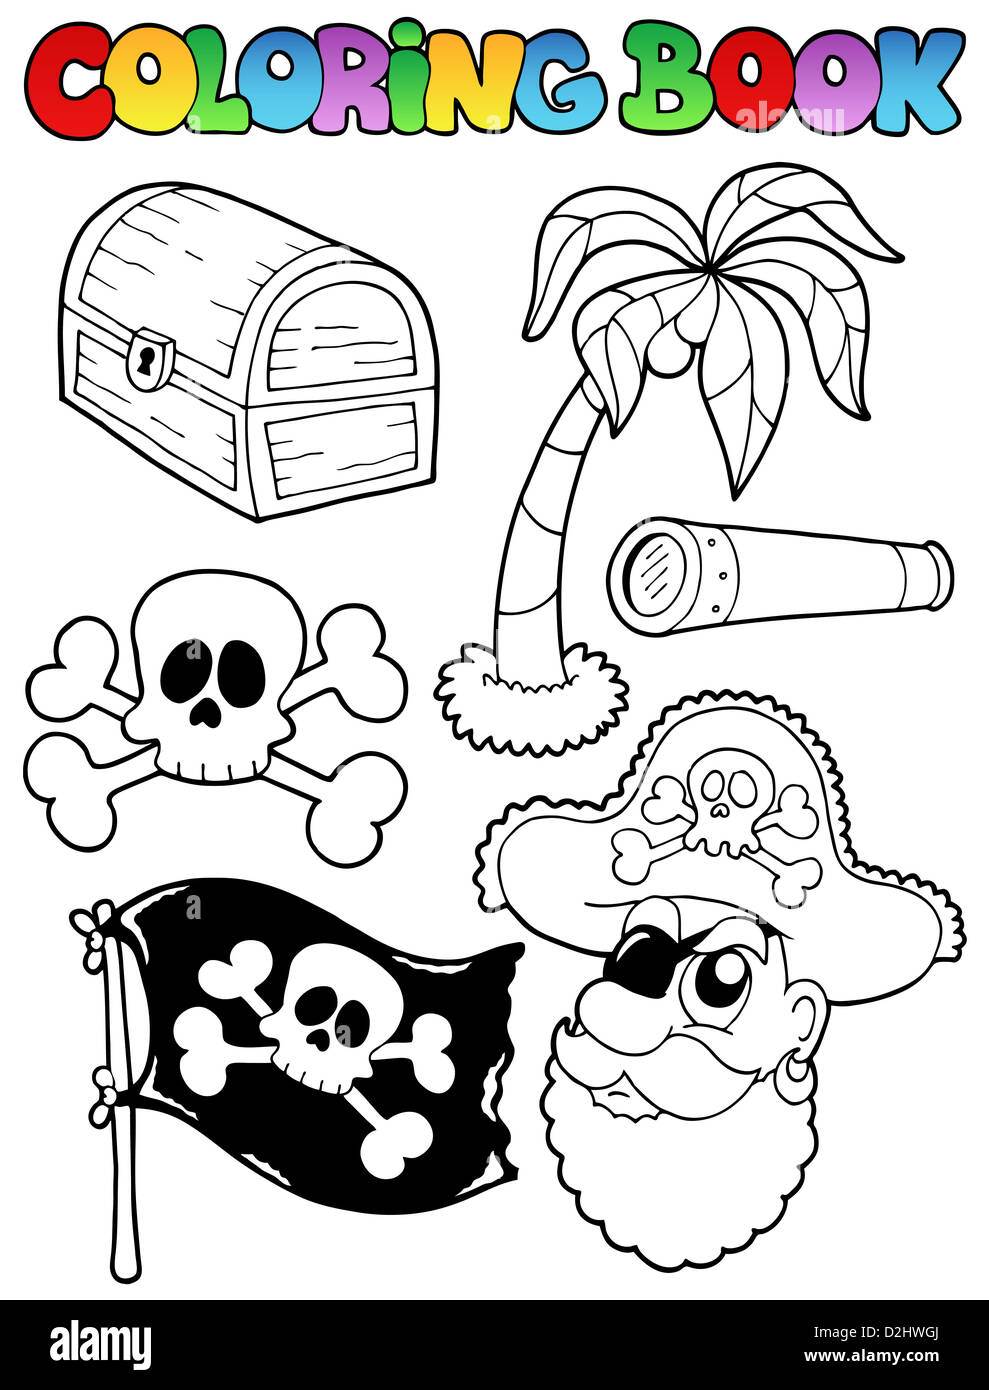 Pirate treasure coloring book hi